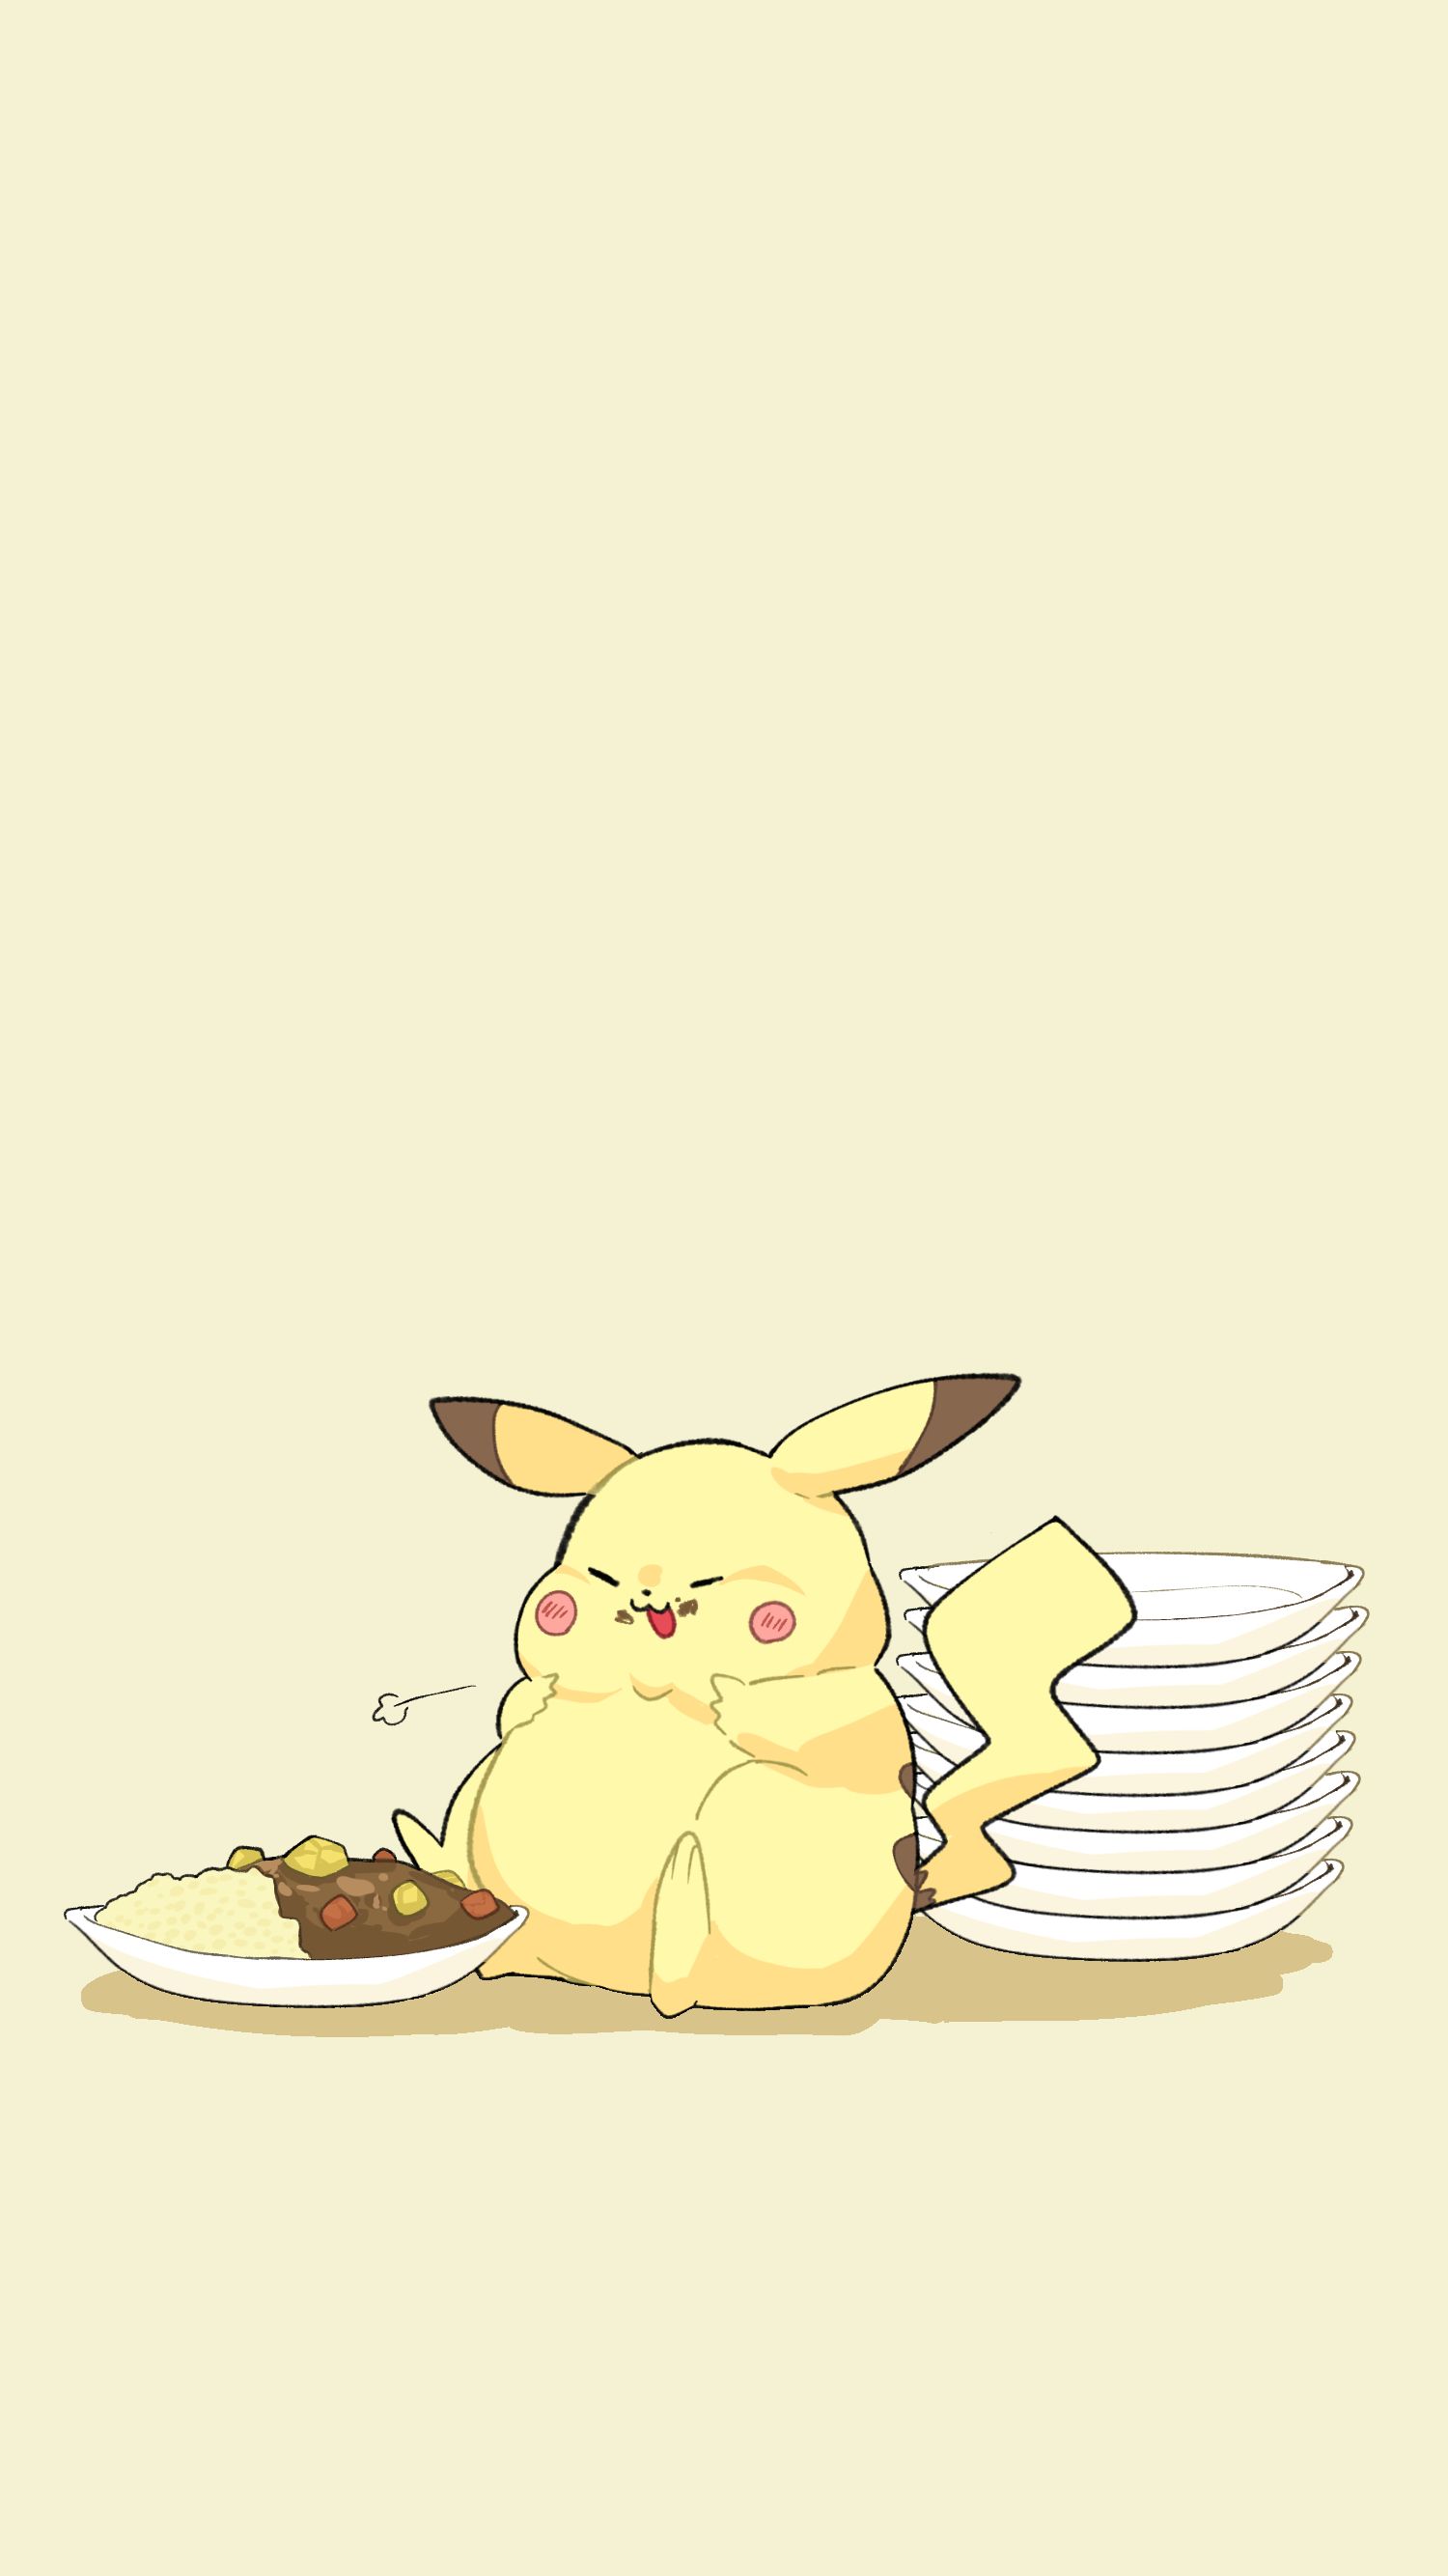 pikachu (pokemon) drawn